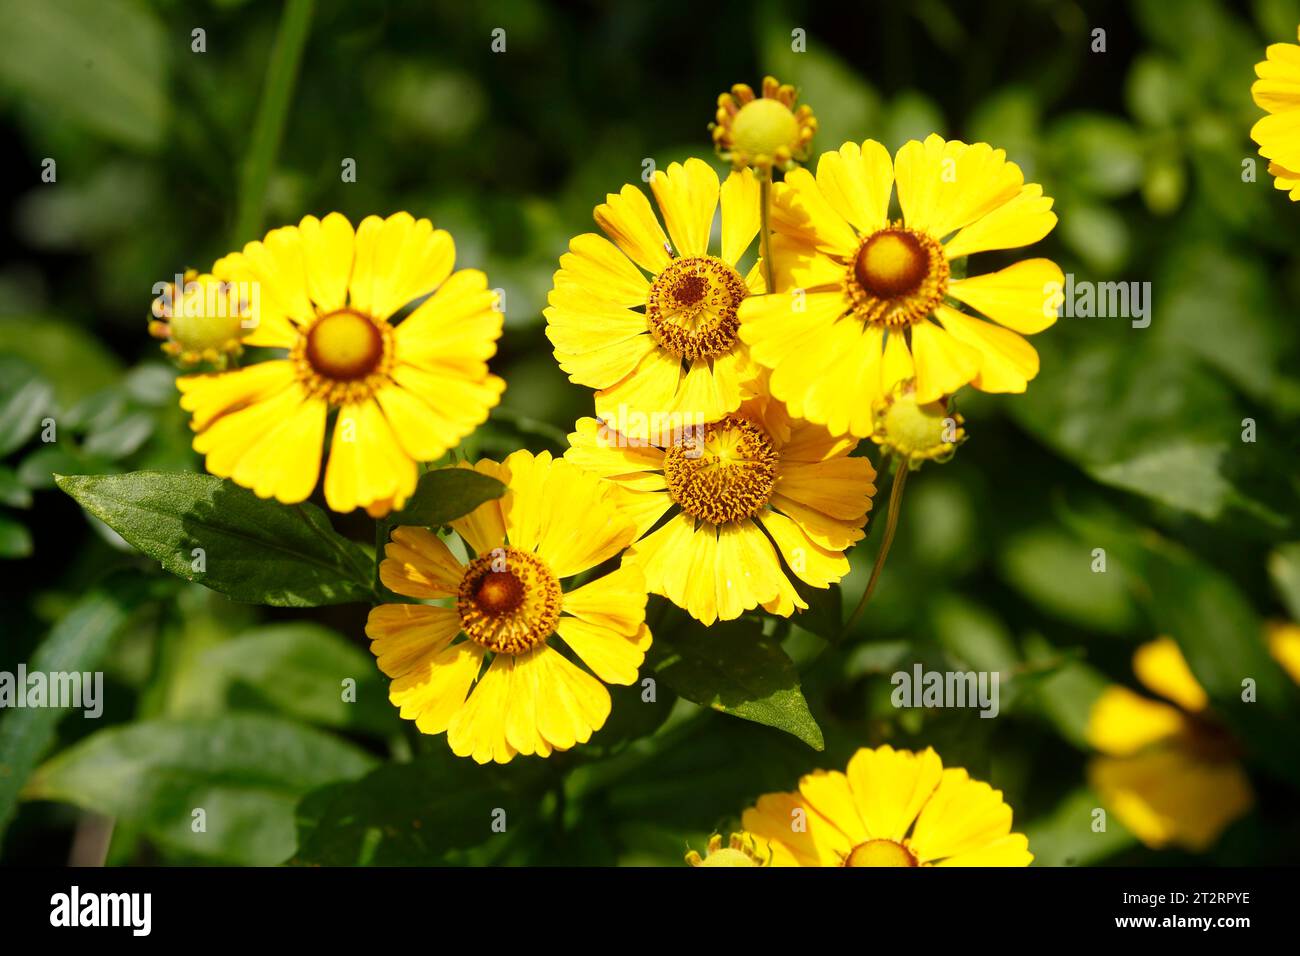 Flowering yellow coneflower (Helenium Hybride), flower, Germany Stock Photo